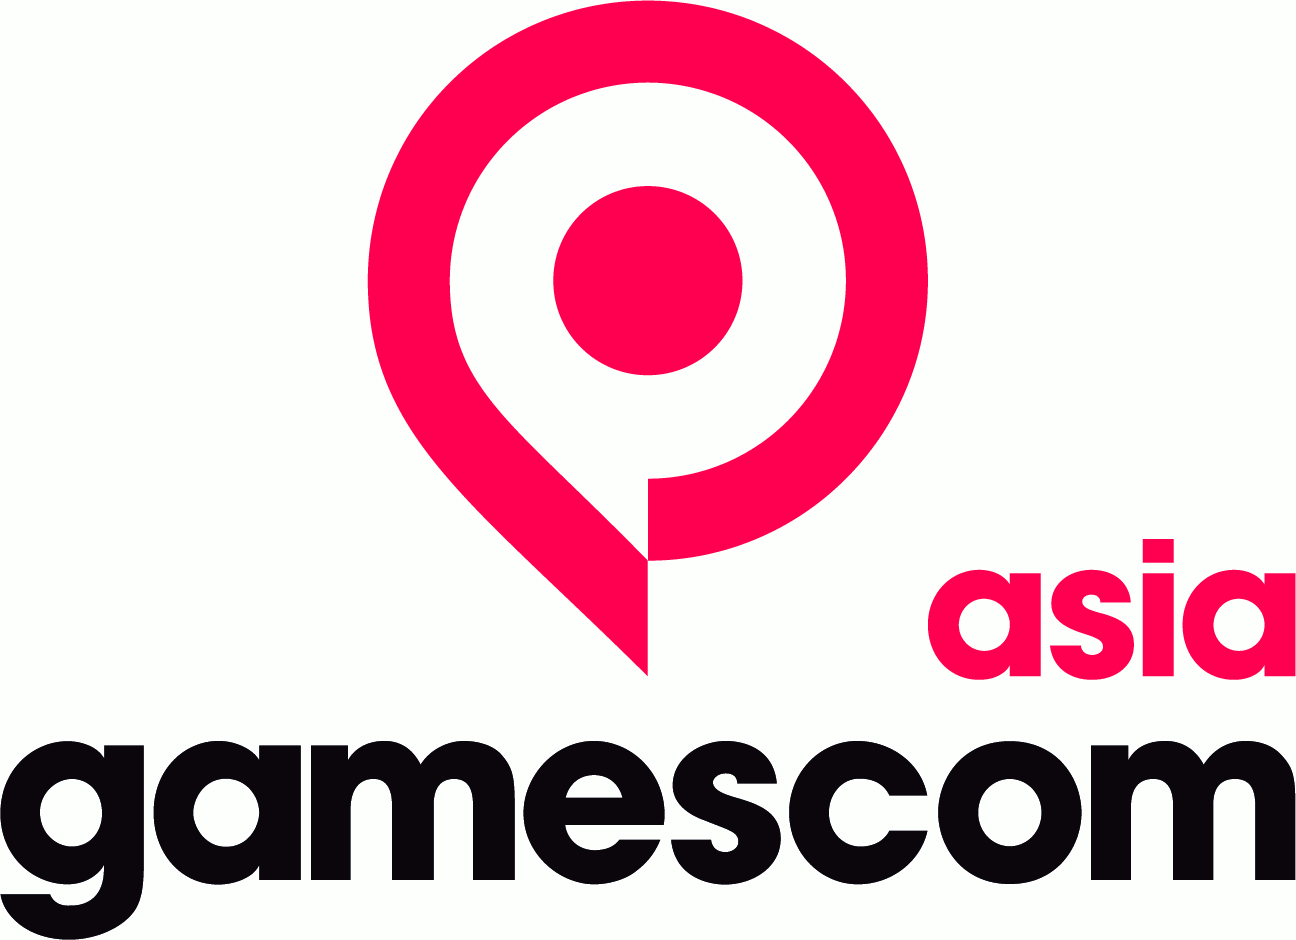 Gamescom Asia